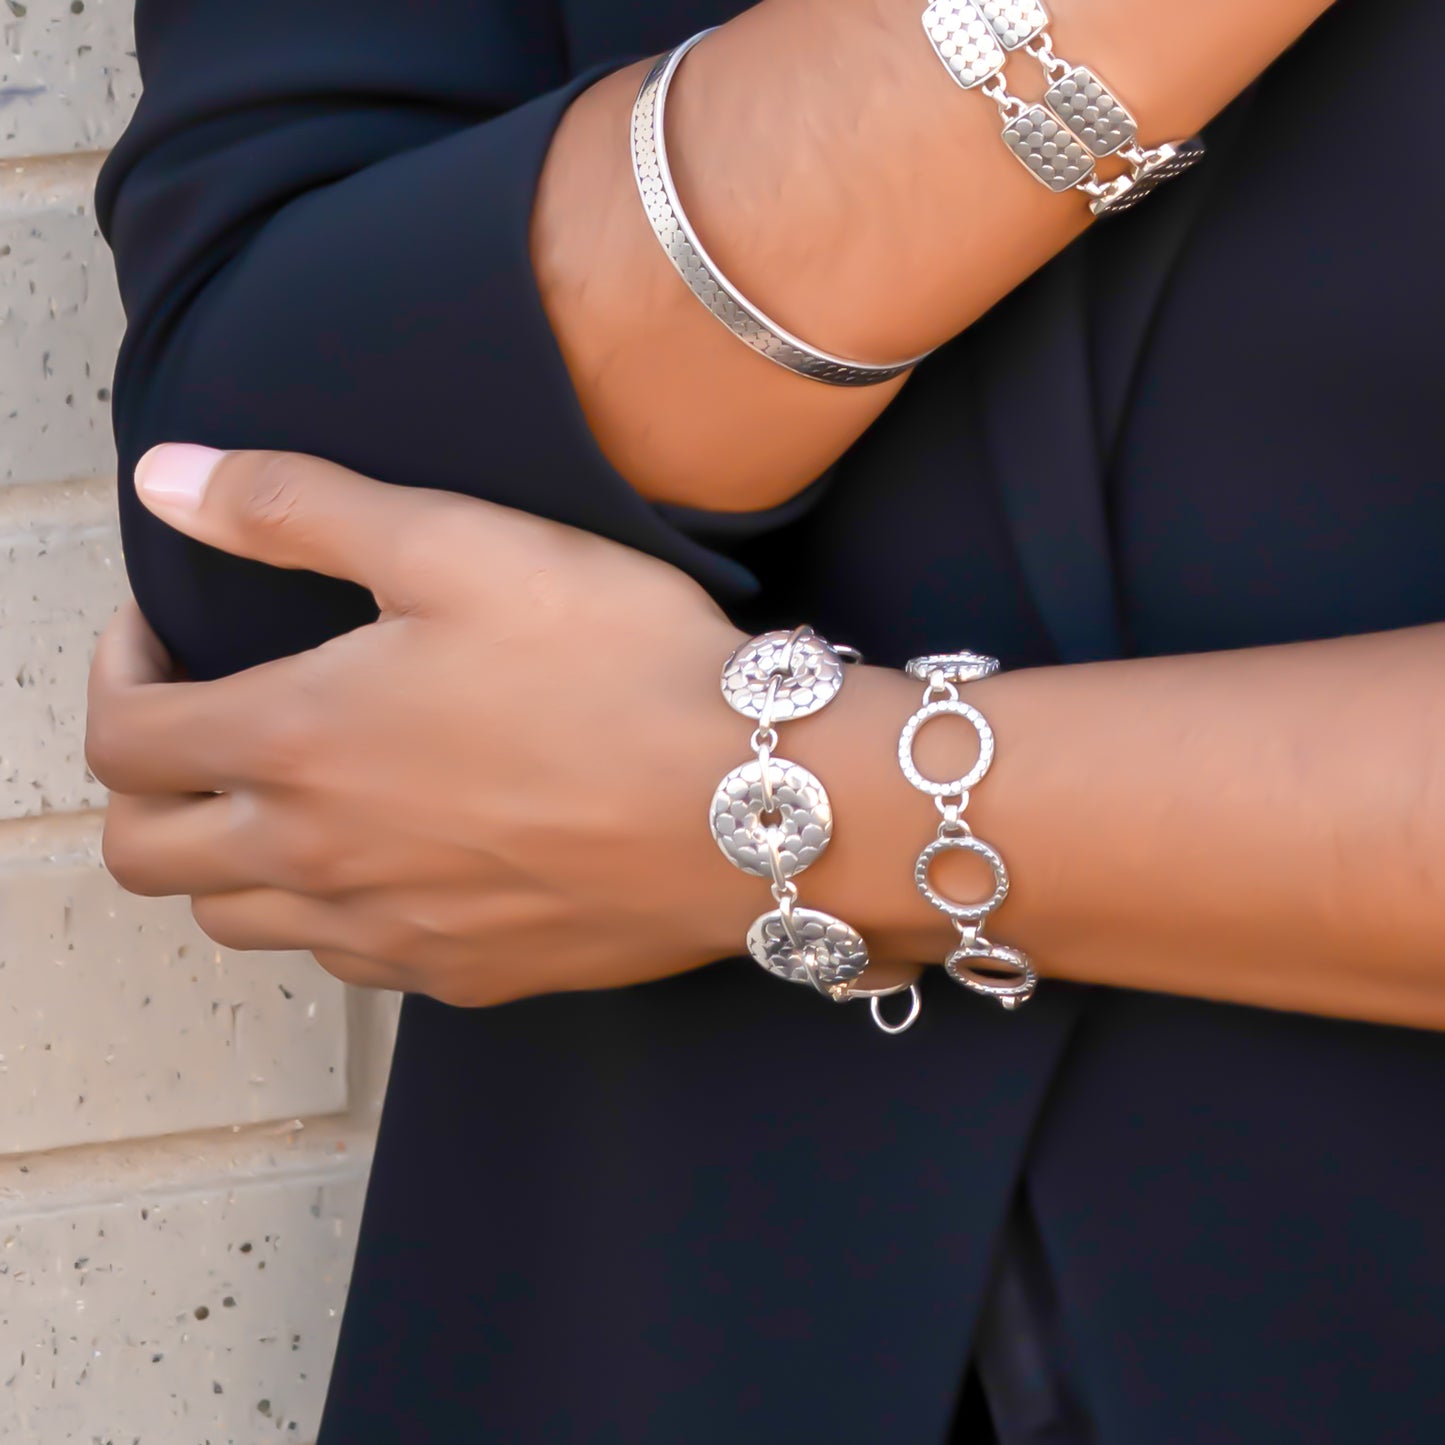 Woman wearing five silver bracelets.